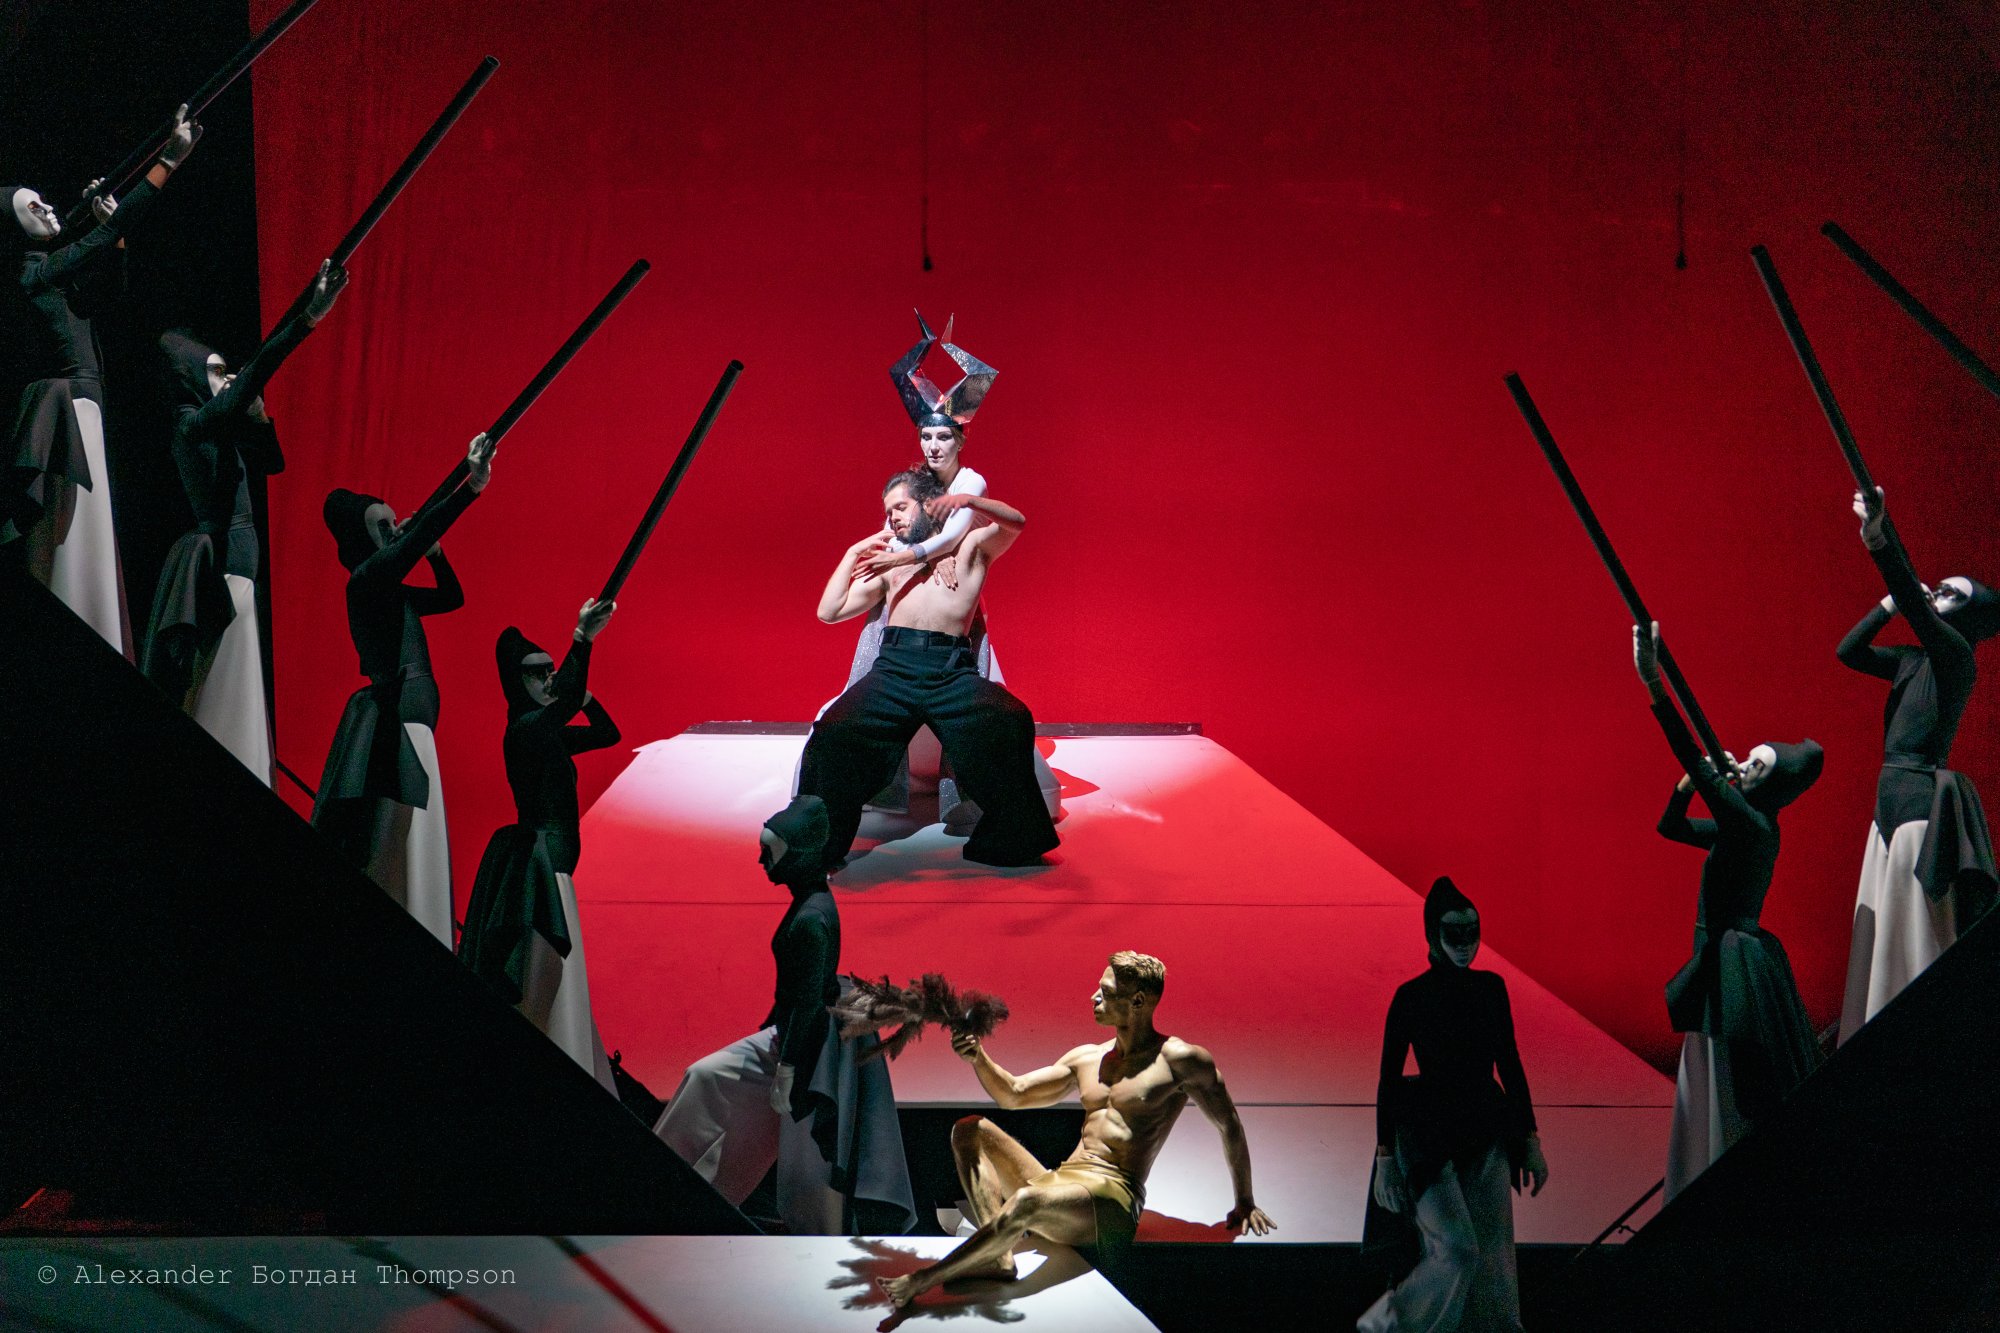 Η υπερπαραγωγή Odysseus έρχεται στην Ελλάδα από το Δραματικό Θέατρο της Φιλιππούπολης μόνο για 2 παραστάσεις